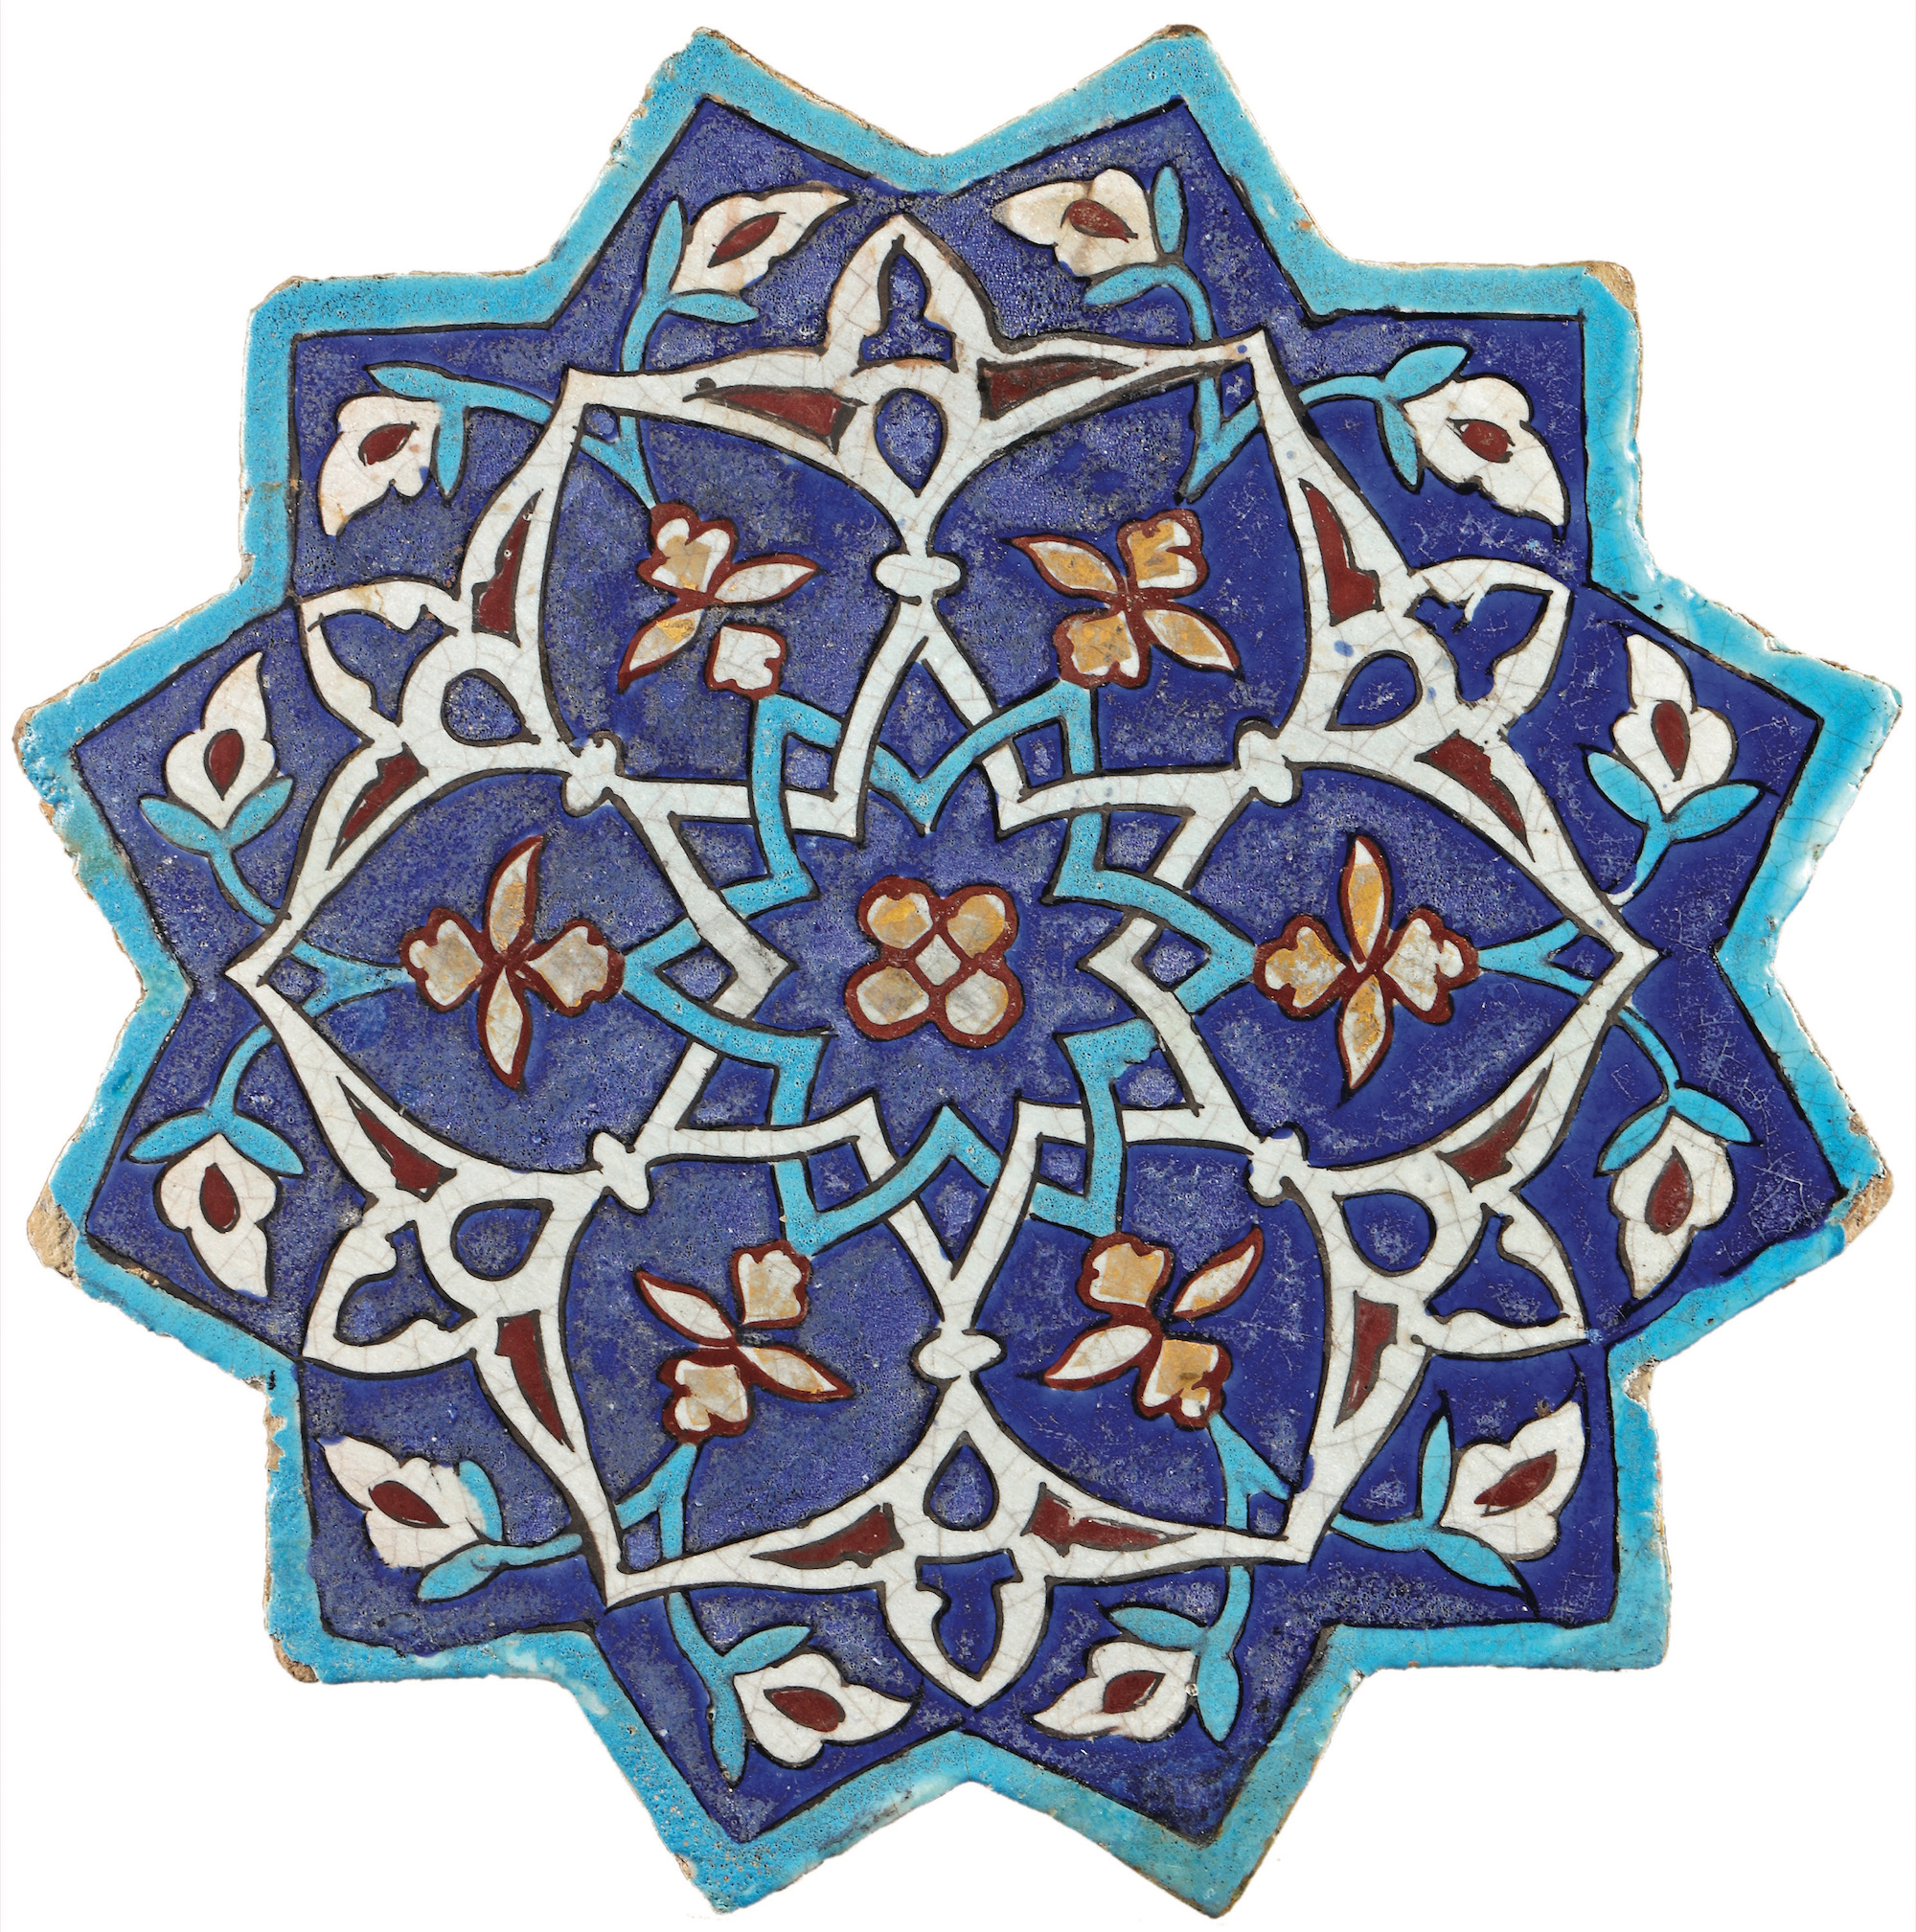 Grande étoile à douze pointes aux fleurons, Iran du Nord-Est, probablement Khargird, vers 1442-1443. Céramique siliceuse, décor de lignes noires et glaçures colorées, rehaut d’or, D. 39,5 cm. Galerie Laure Soustiel. Photo service de presse. © DR